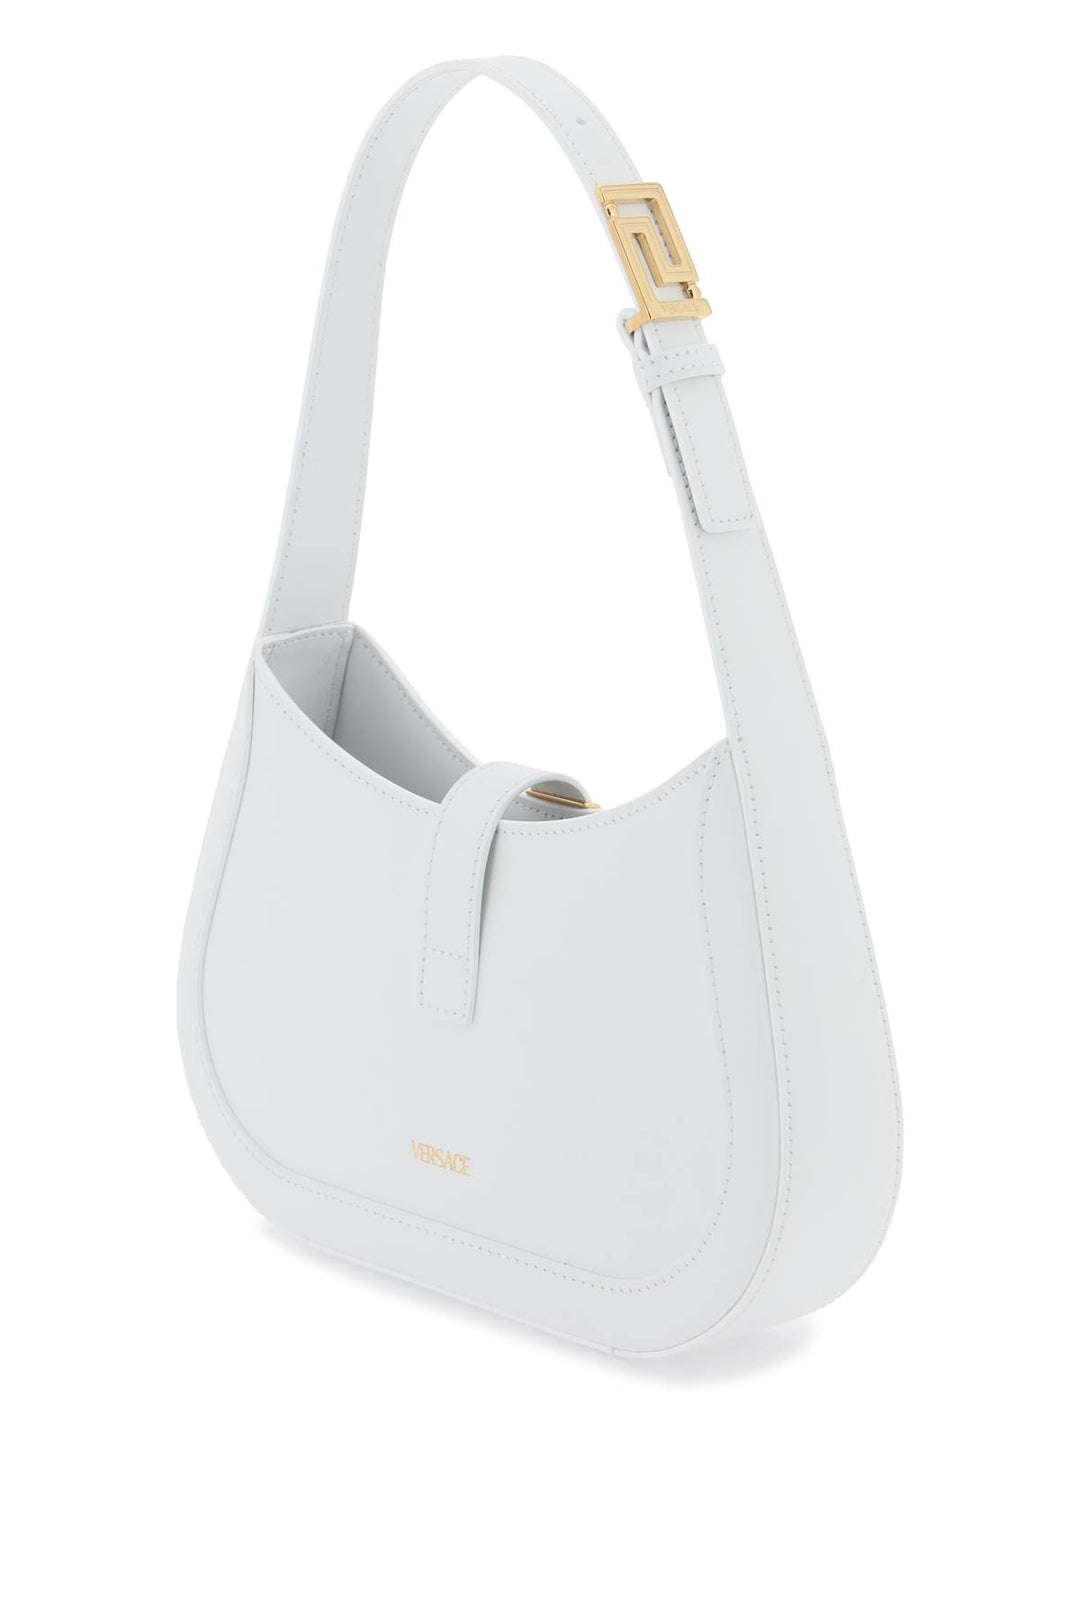 Versace Greca Goddess Small Hobo Bag   Bianco